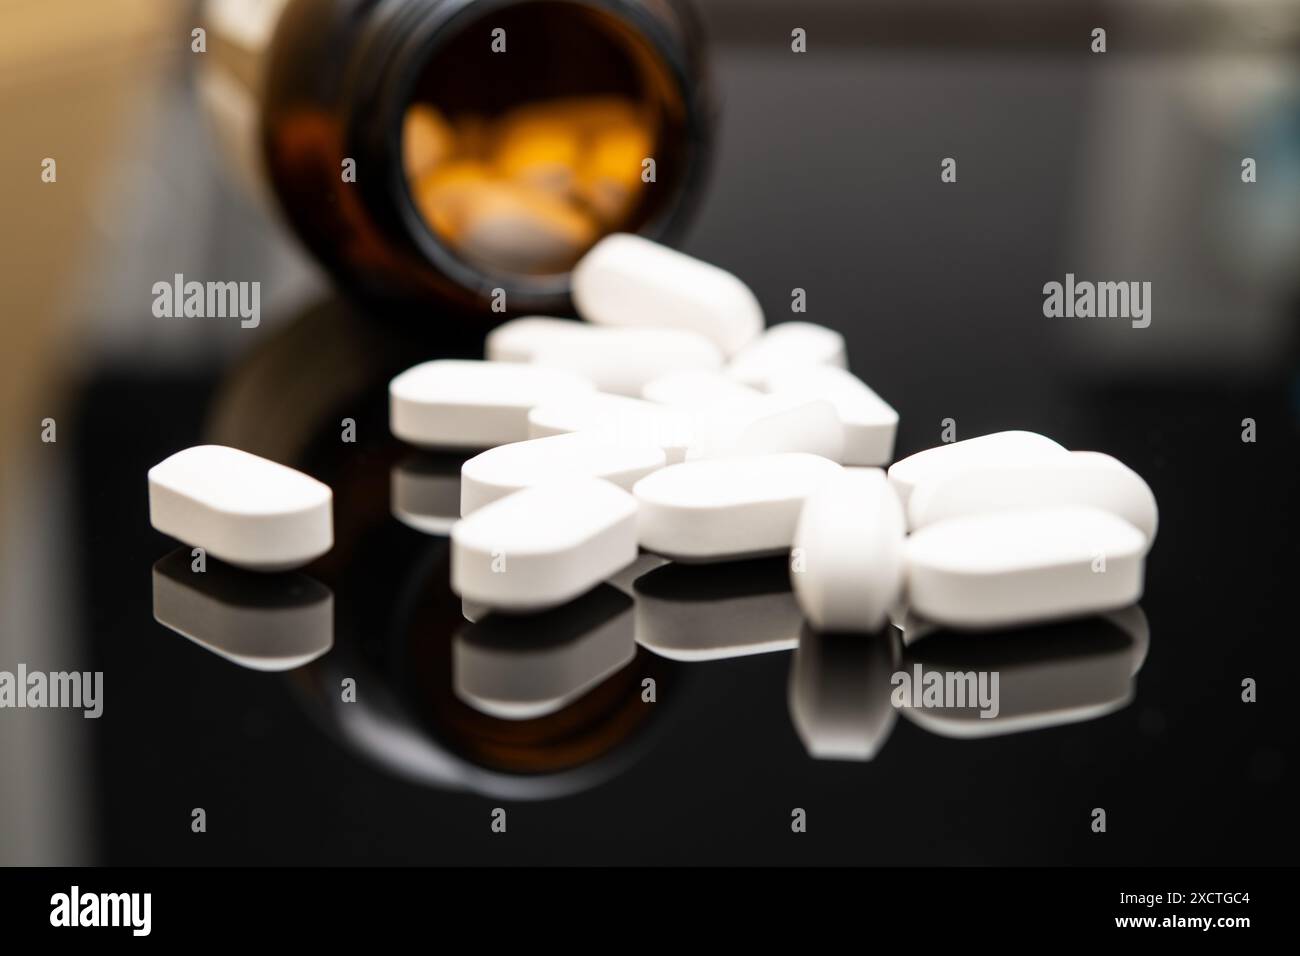 Vue rapprochée de comprimés opioïdes blancs de forme ovale renversés d’un flacon de prescription foncé sur une surface noire réfléchissante, mettant en évidence le fentanyl Banque D'Images